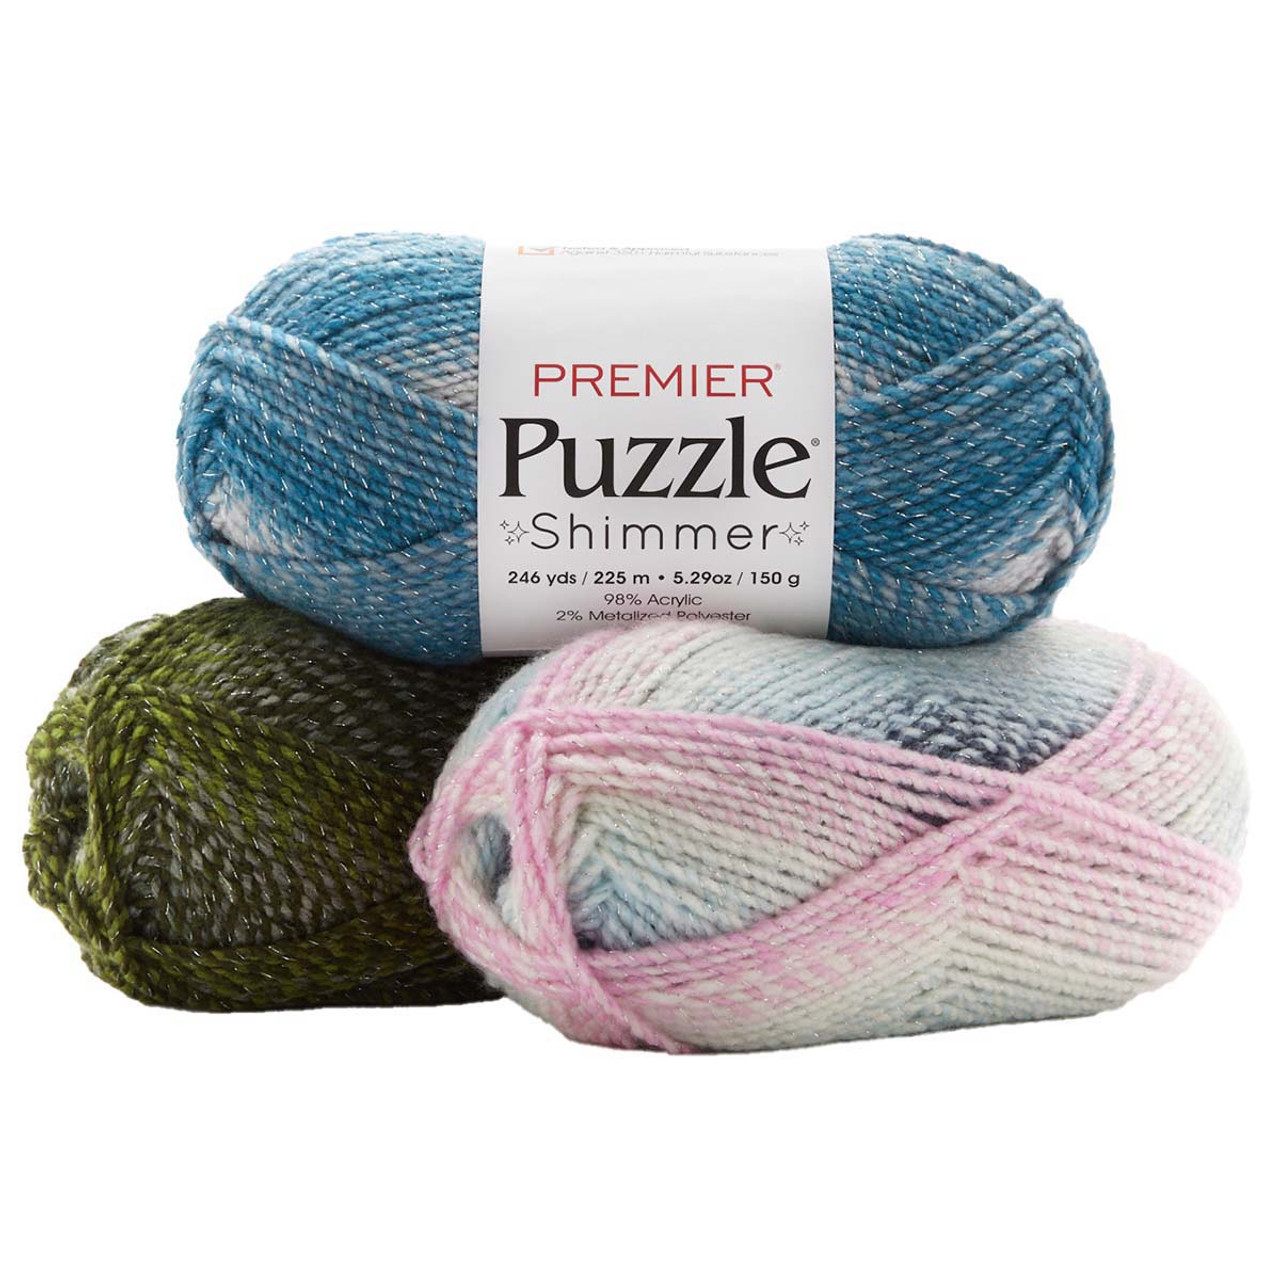 Premier Puzzle Yarn-Seashore